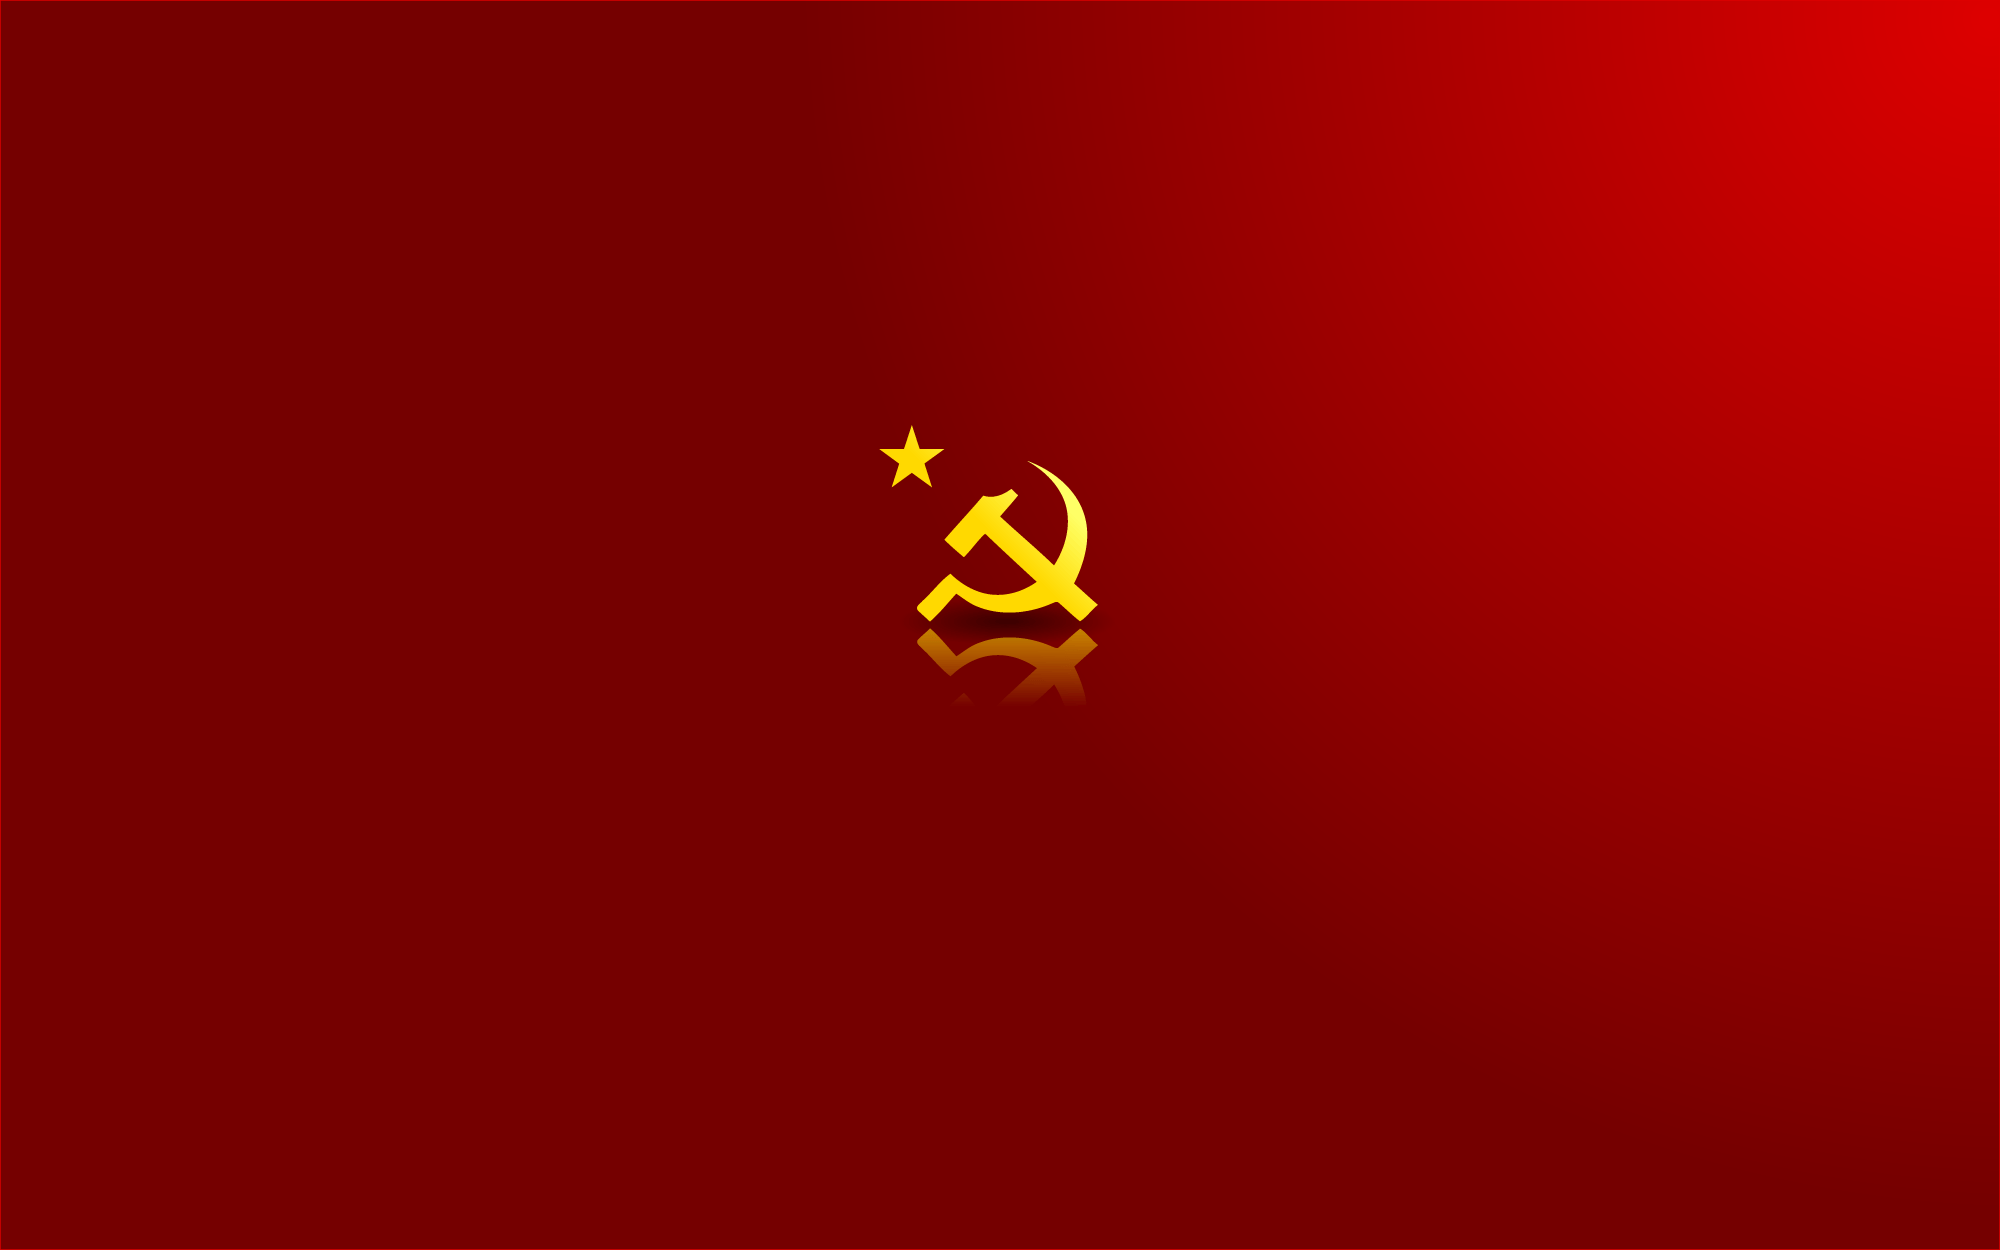 communism, Soviet, USSR Wallpaper / WallpaperJam.com